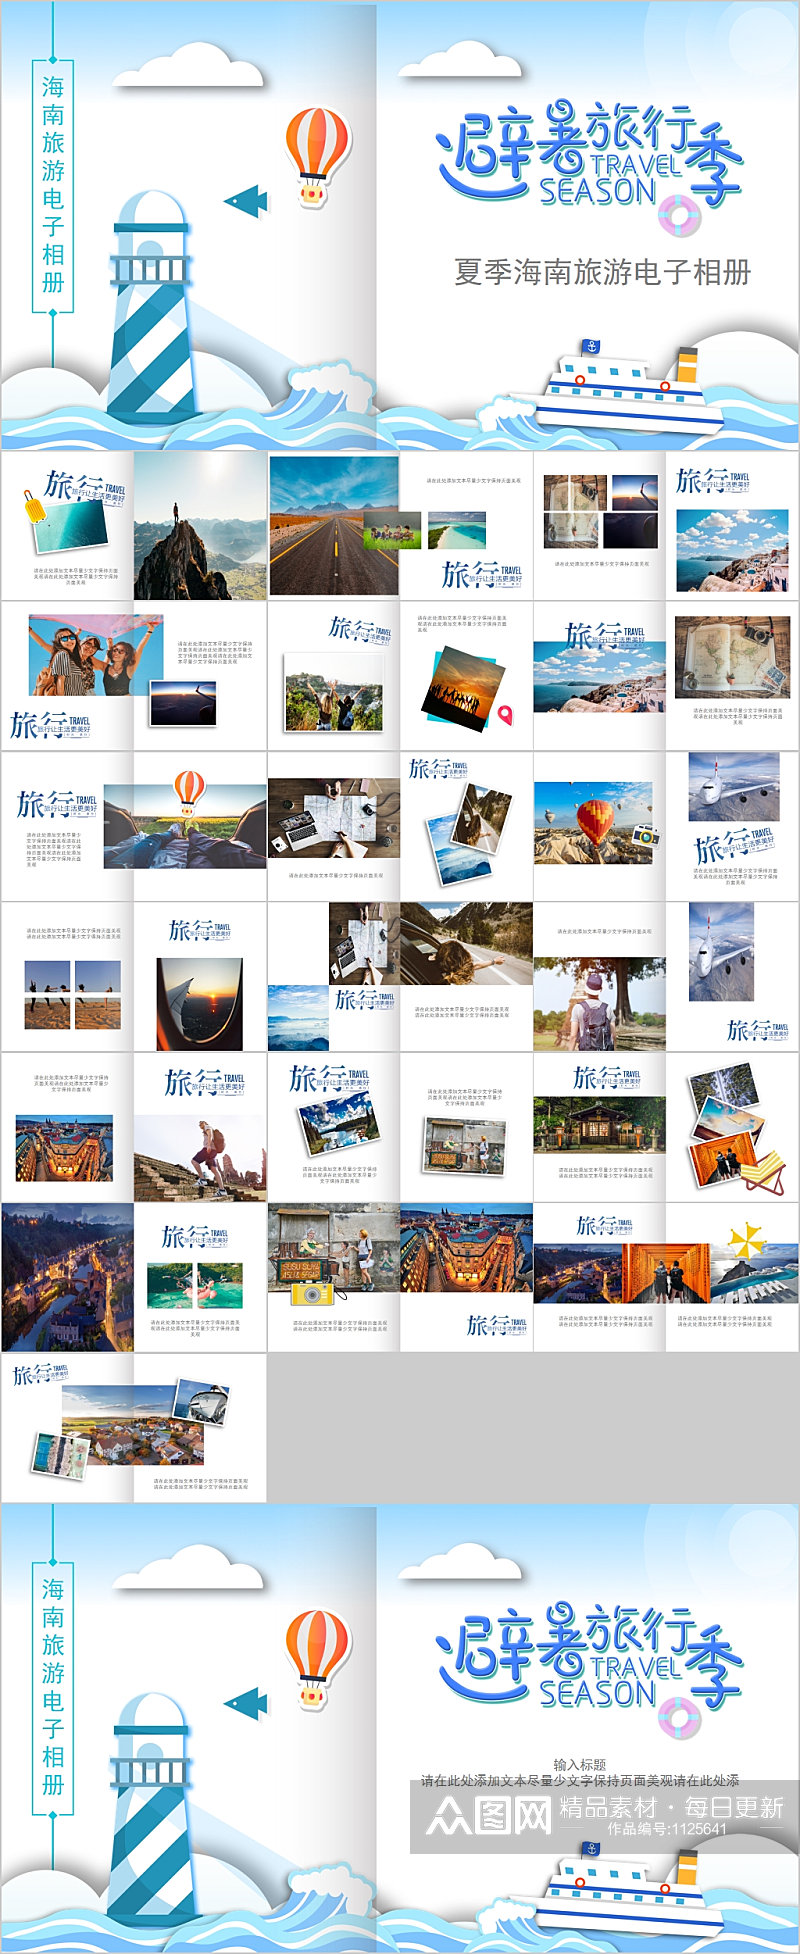 夏季海南旅游电子相册PPT模板素材